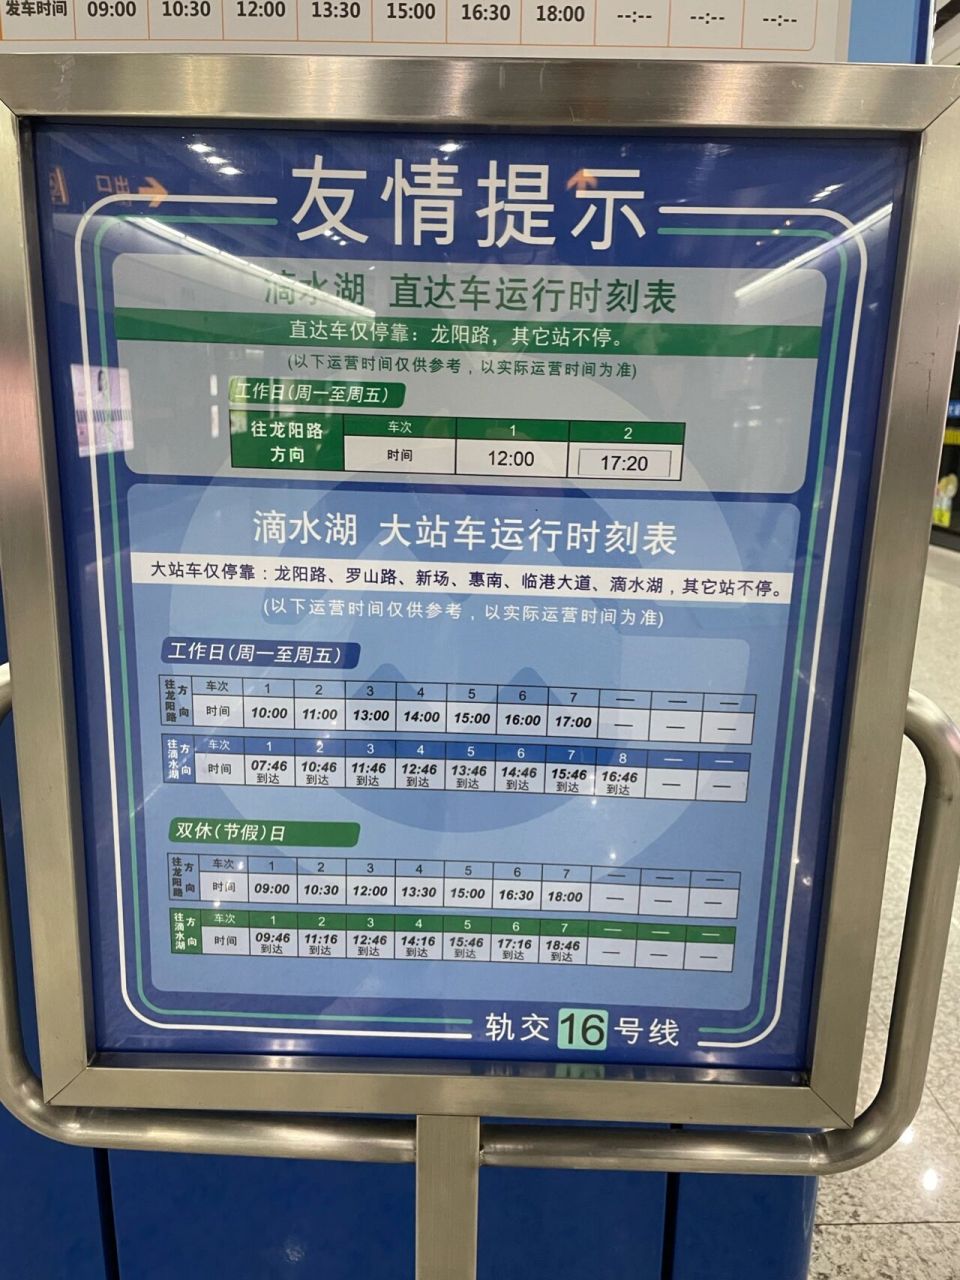 上海地铁5号线时刻表图片